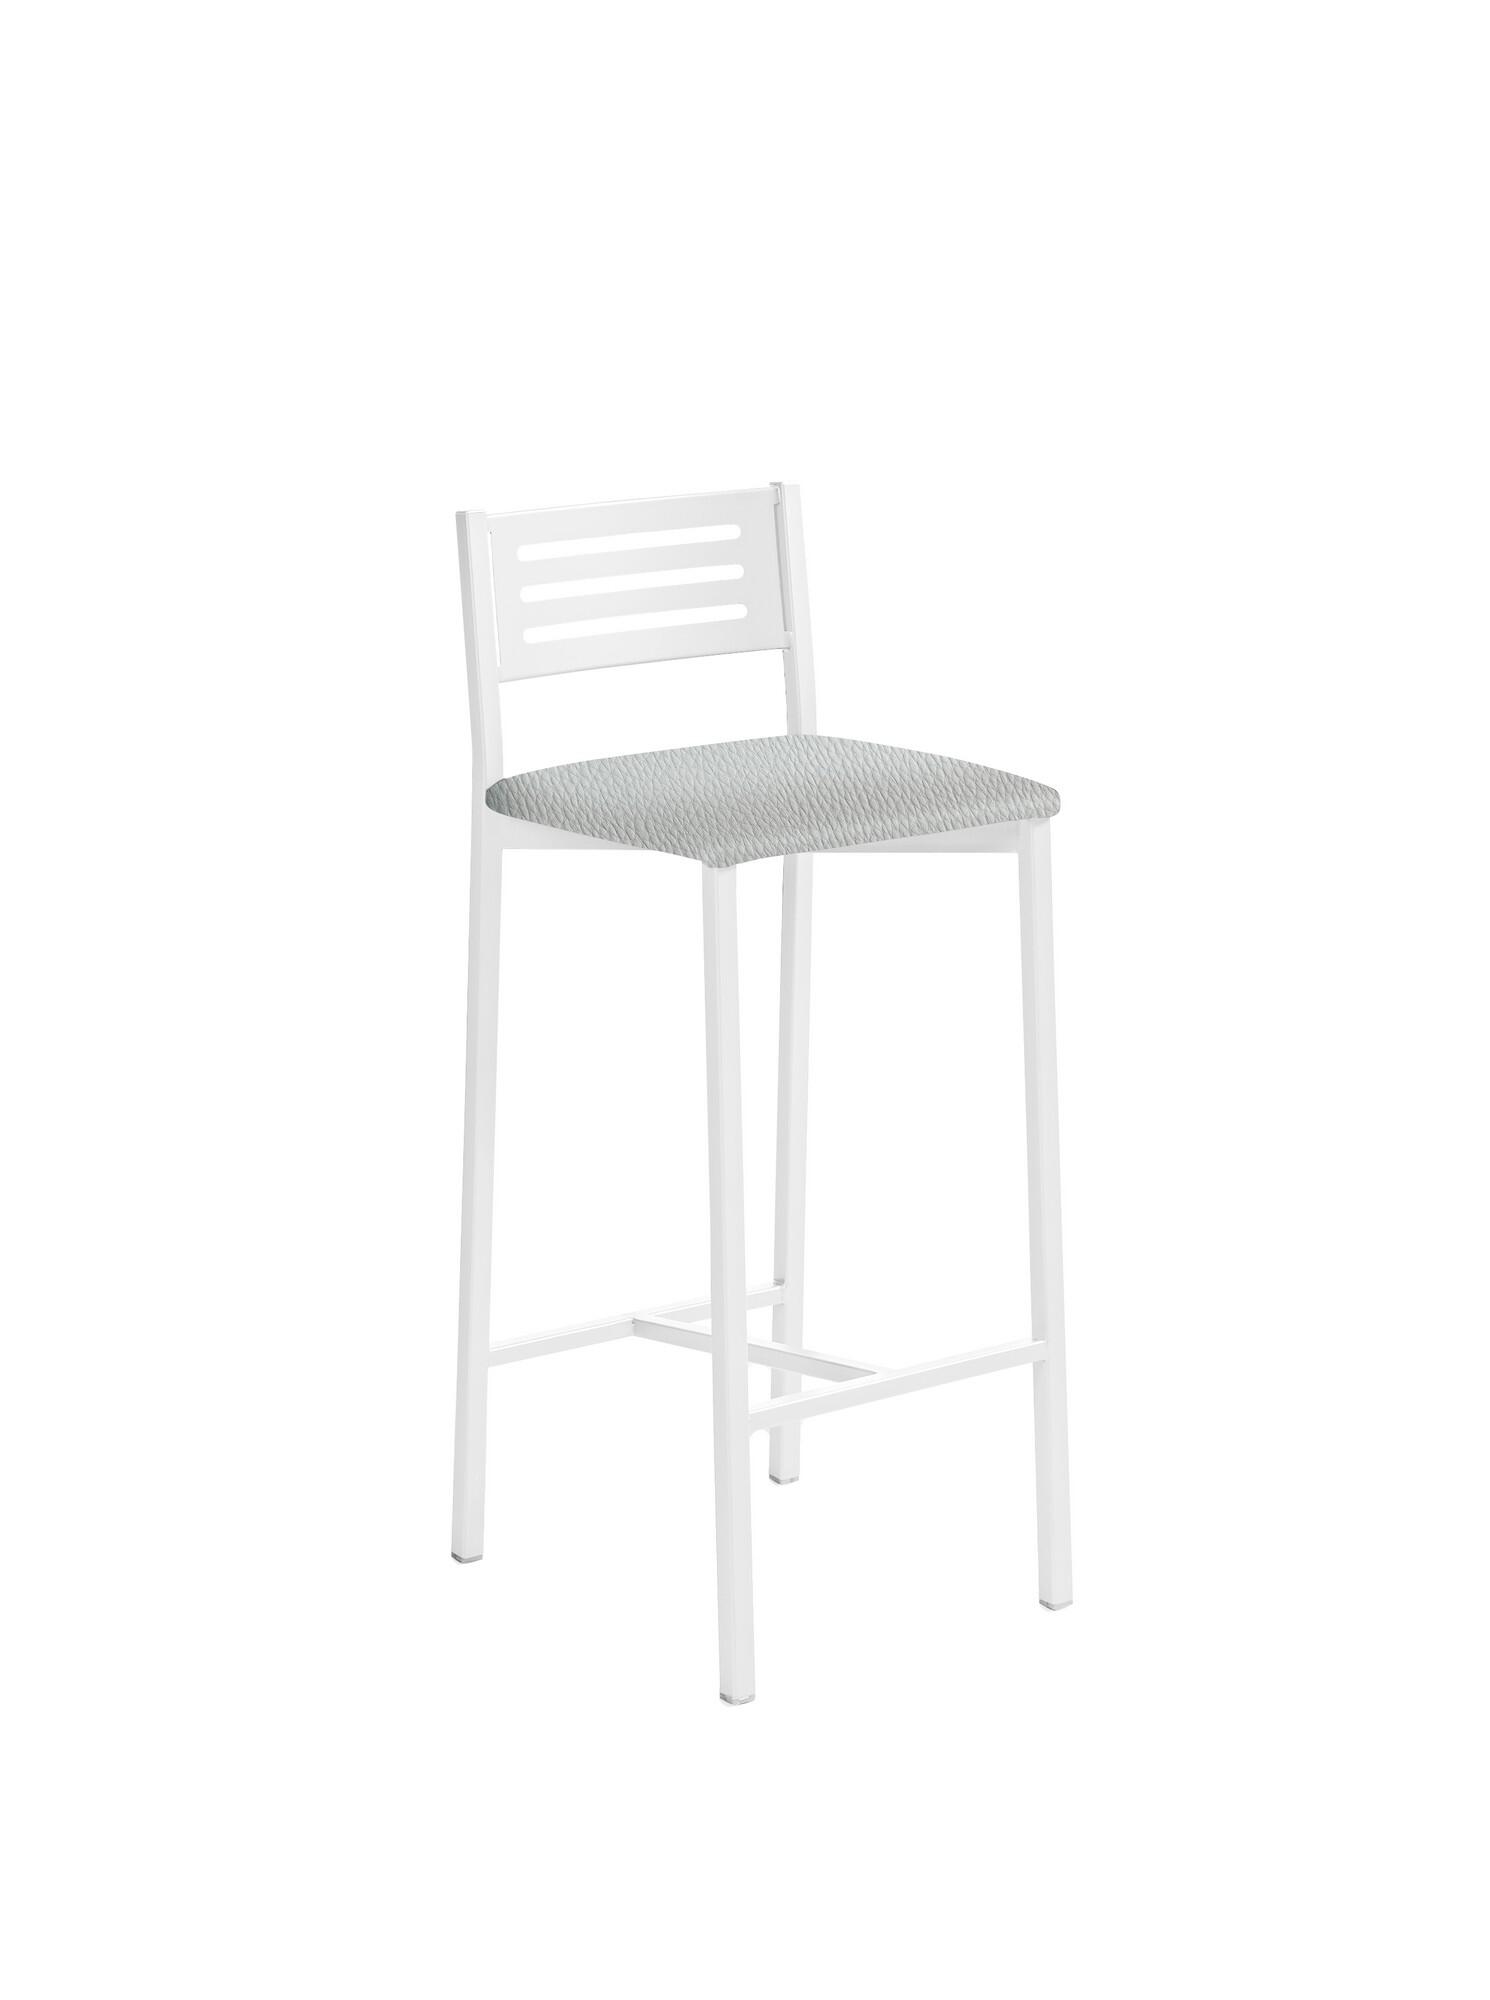 Taburete de estructura color blanco texturizado y asiento plata de 33 x 66 cm